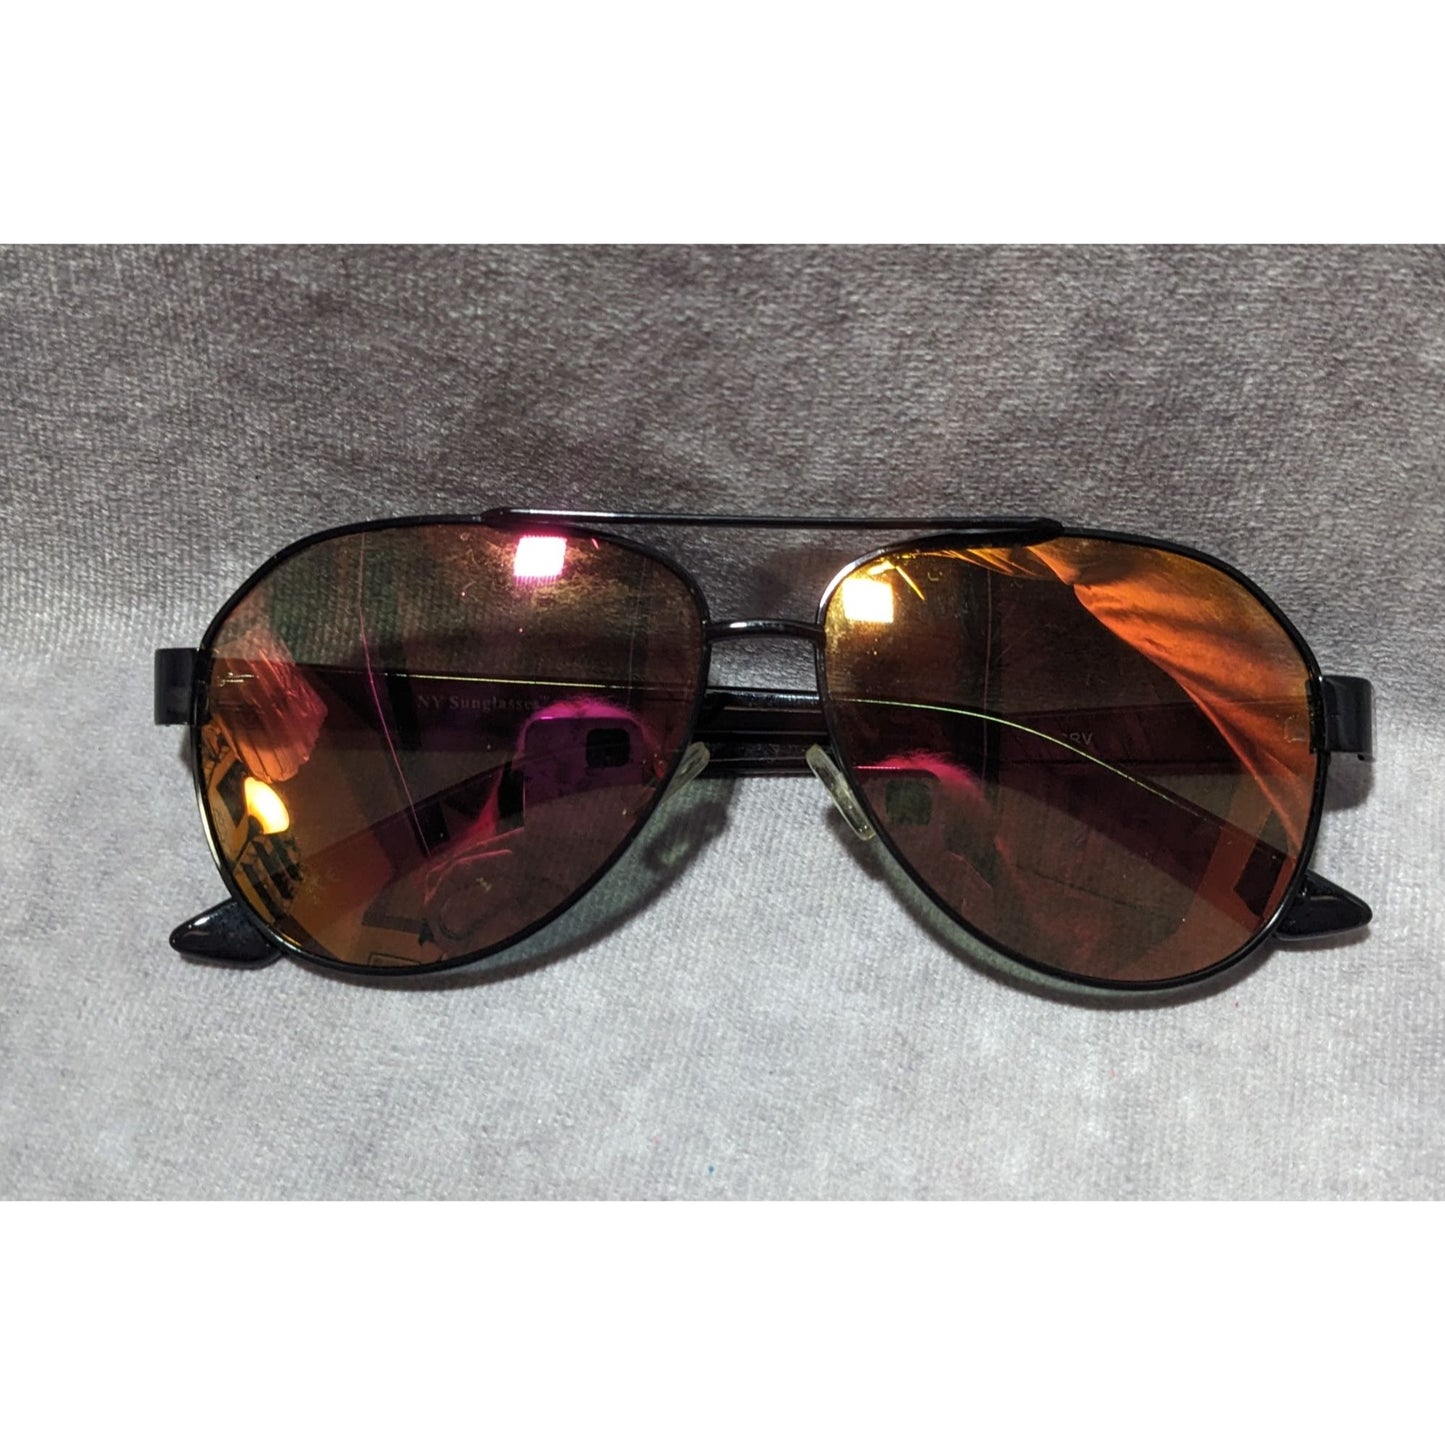 NY Sunglasses Aviators